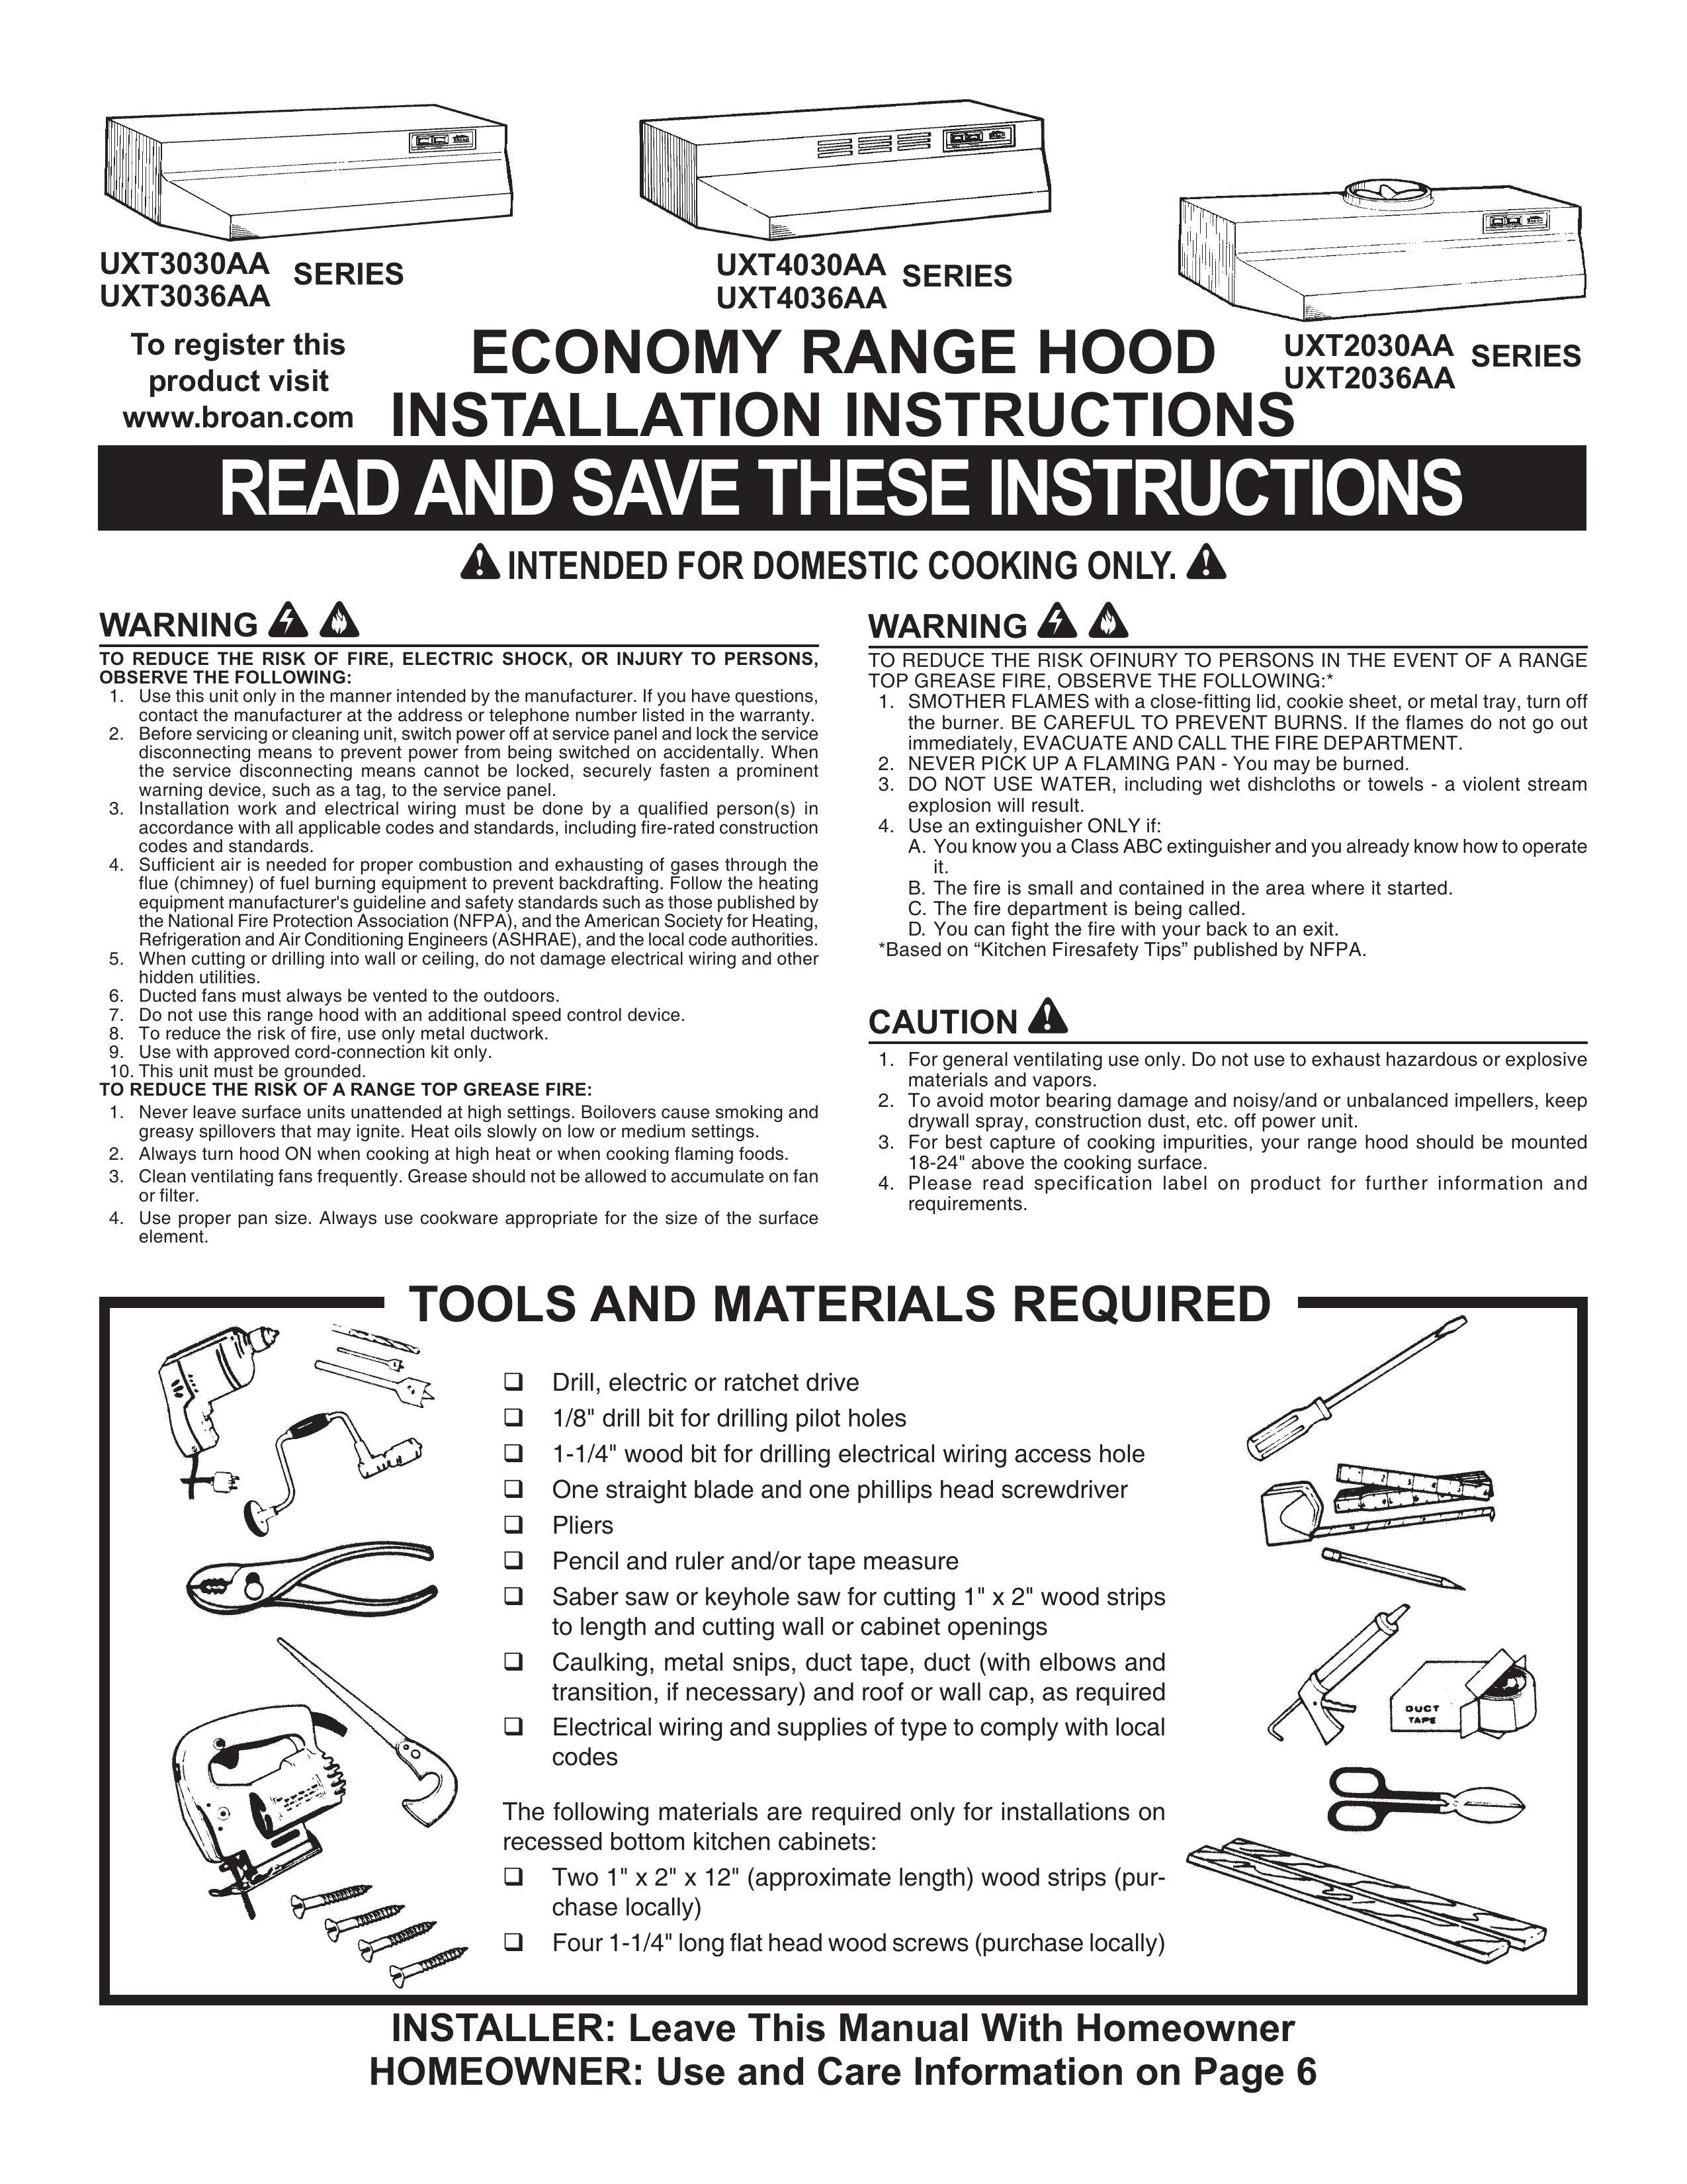 Maytag UXT4030AA Ventilation Hood User Manual